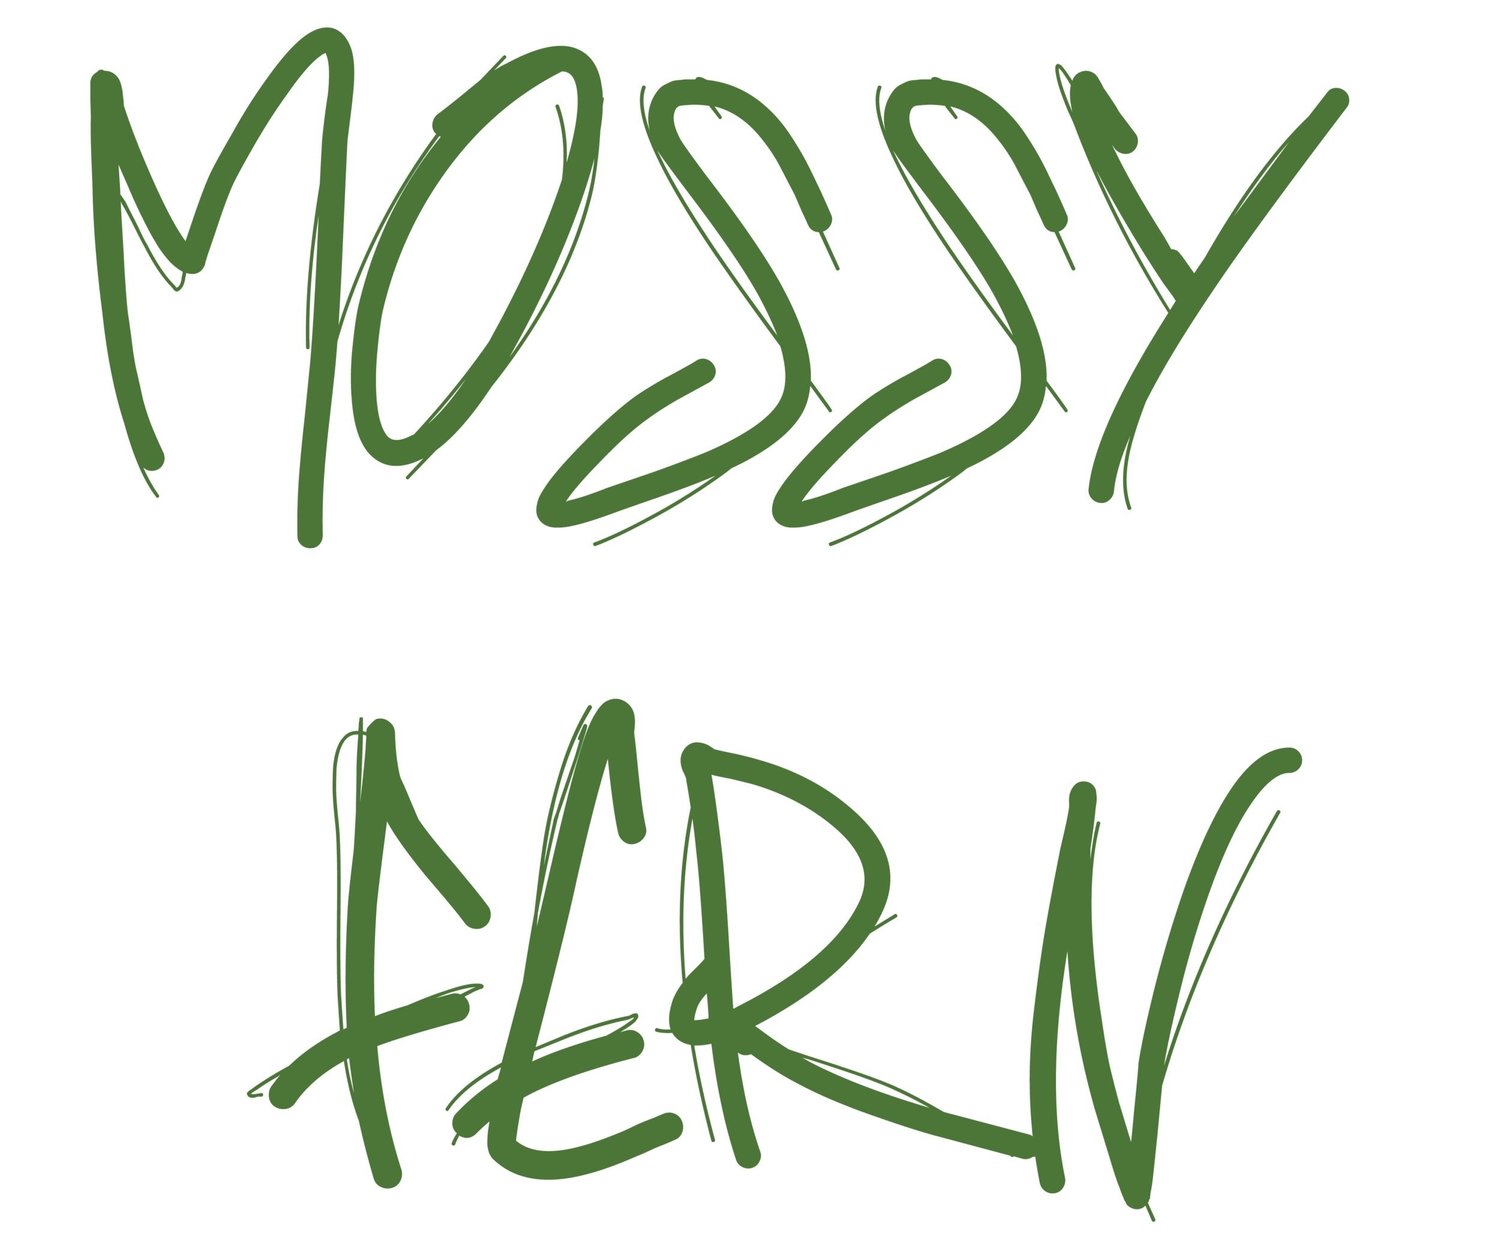 Mossy Fern